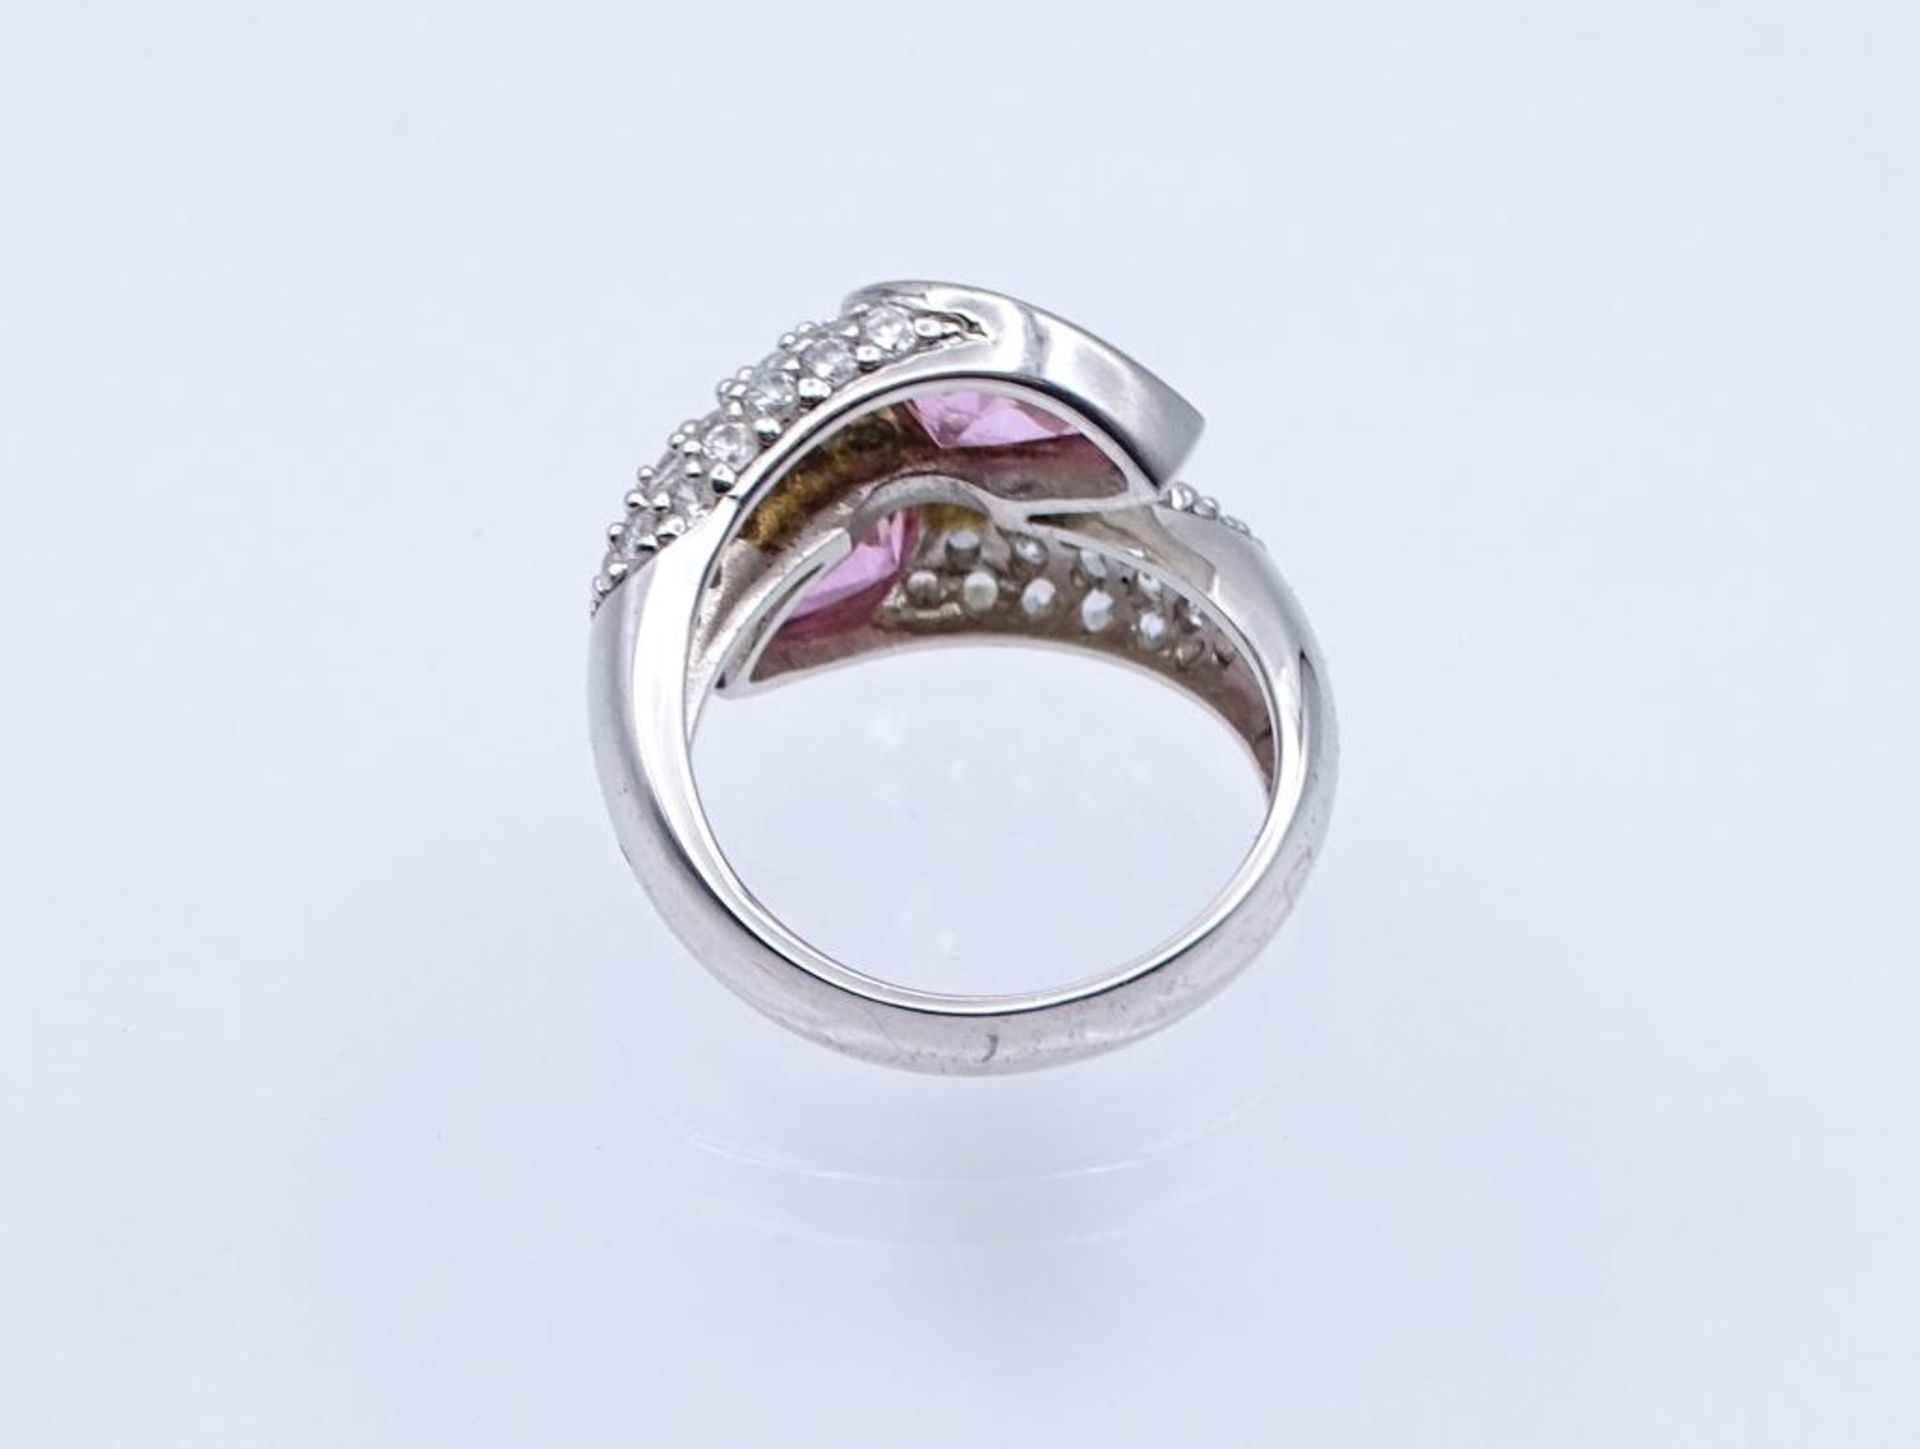 Silber Ring mit pinken und klaren Steinen, 9,9gr., RG 60- - -22.61 % buyer's premium on the hammer - Bild 3 aus 3